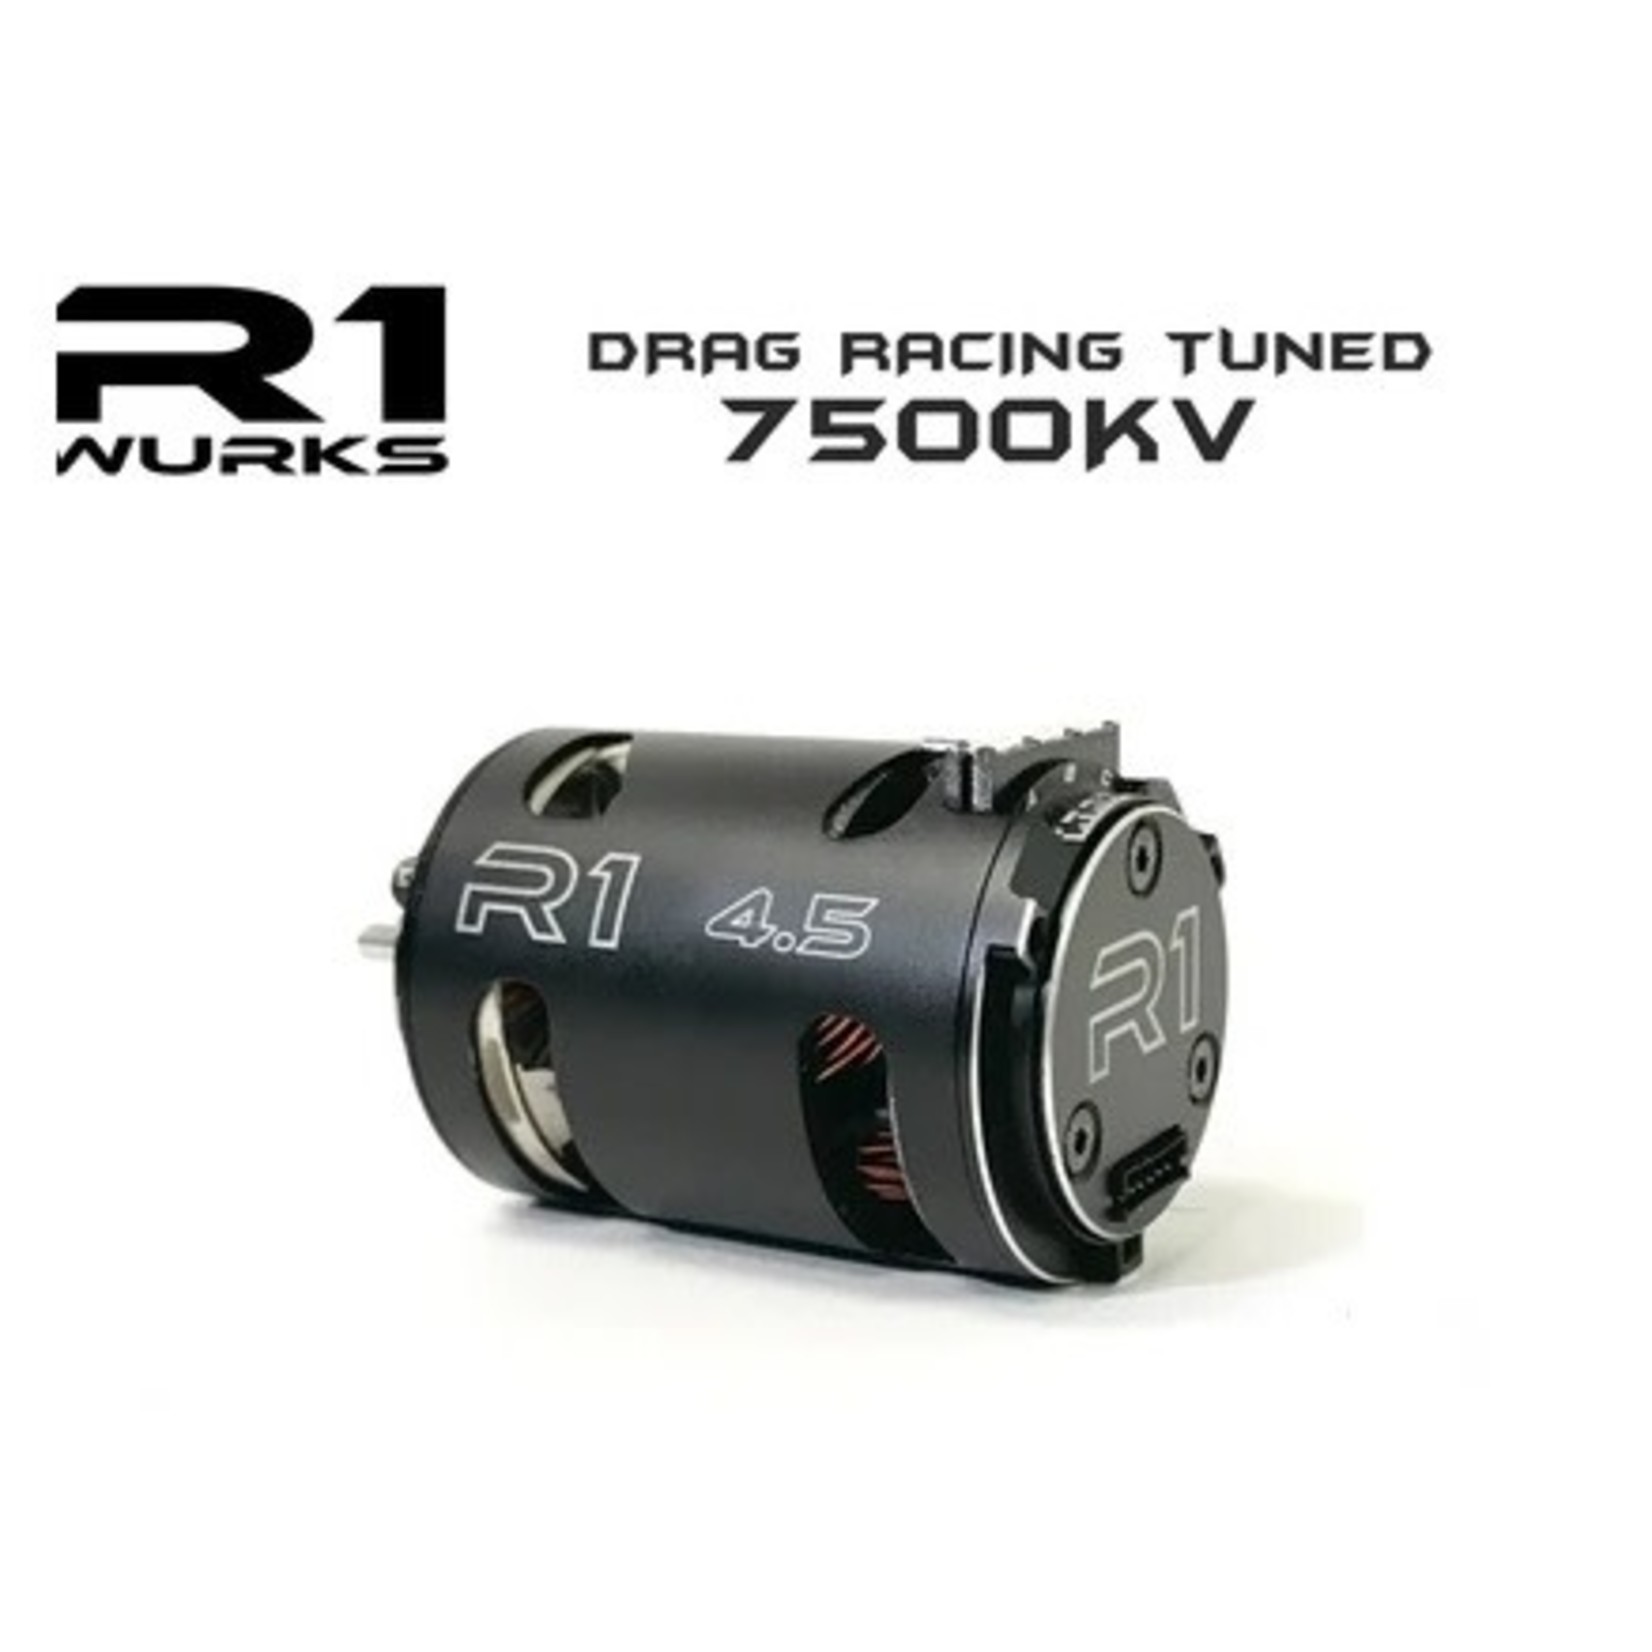 R1 Wurks R1 Wurks 4.5T V16 Drag Racing Tuned 7500kV Motor #020109